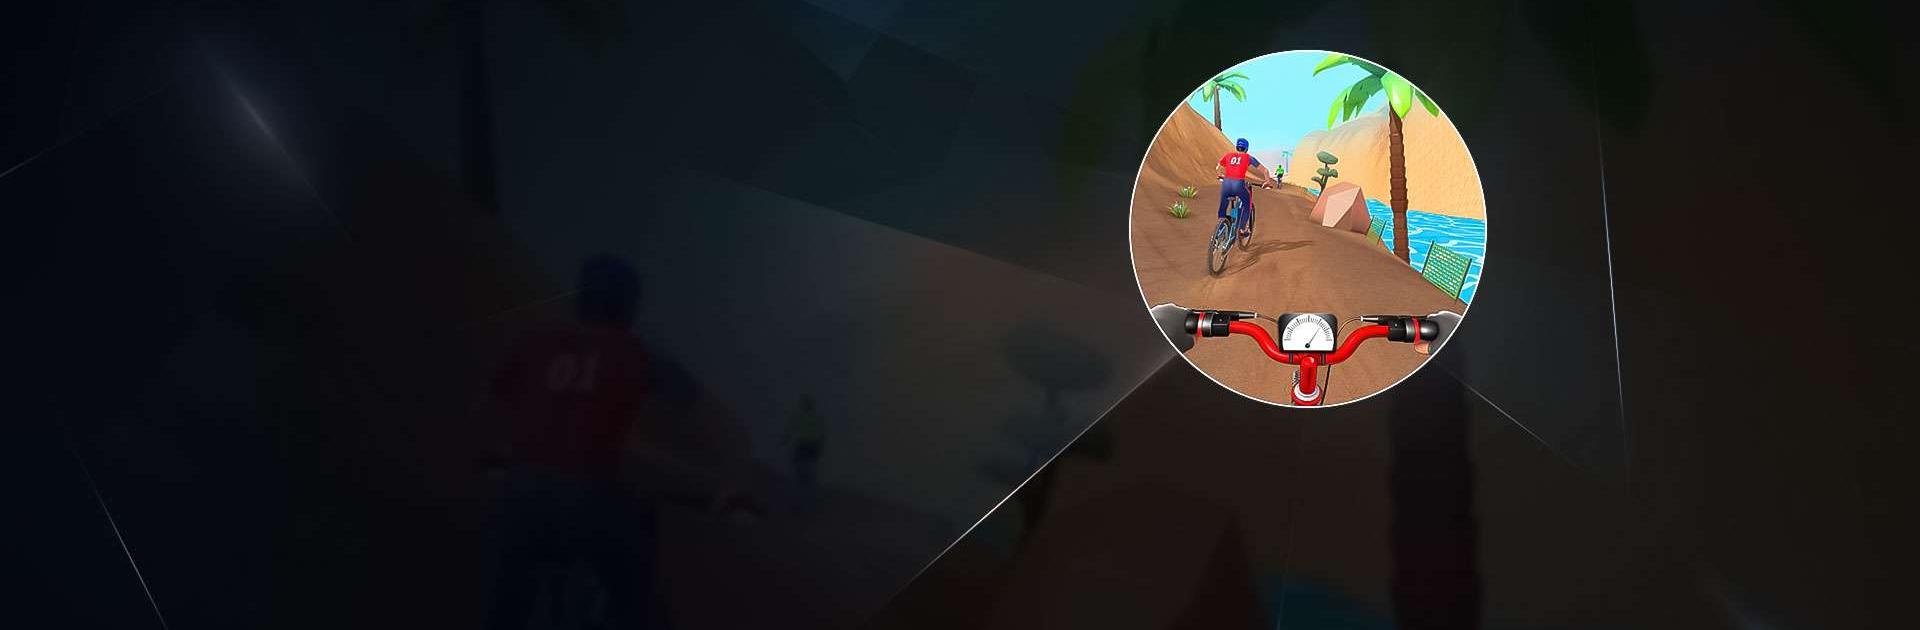 jeux de bmx - jeux de vélo 3D